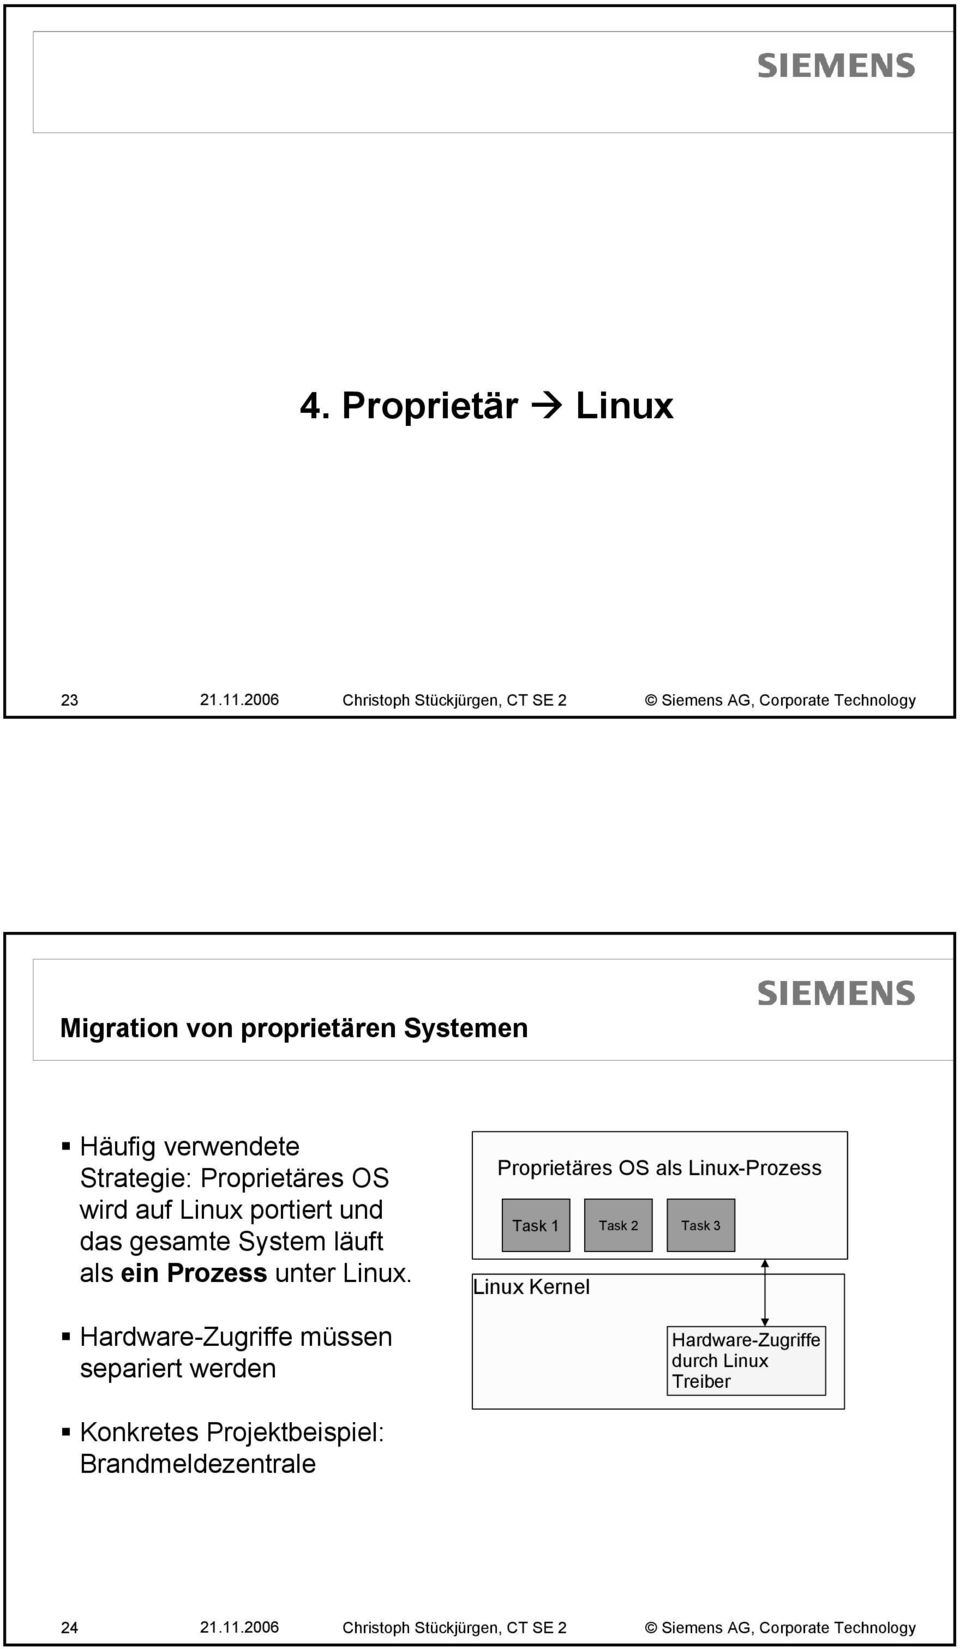 Strategie: Proprietäres OS wird auf Linux portiert und das gesamte System läuft als ein Prozess unter Linux.